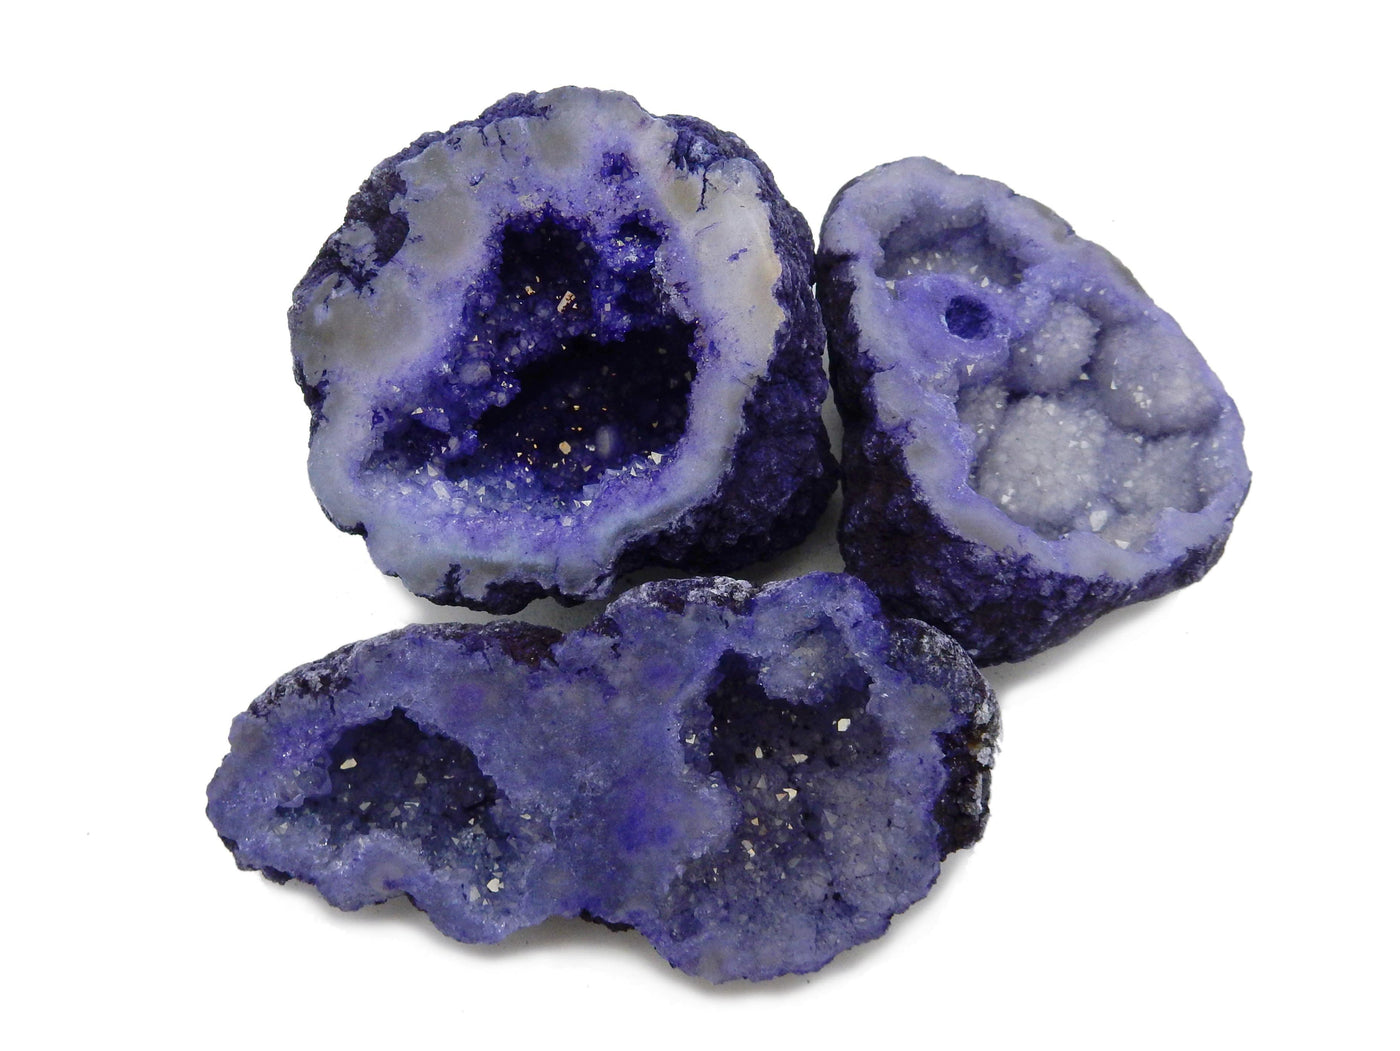 Purple Large Geode Halves on a table